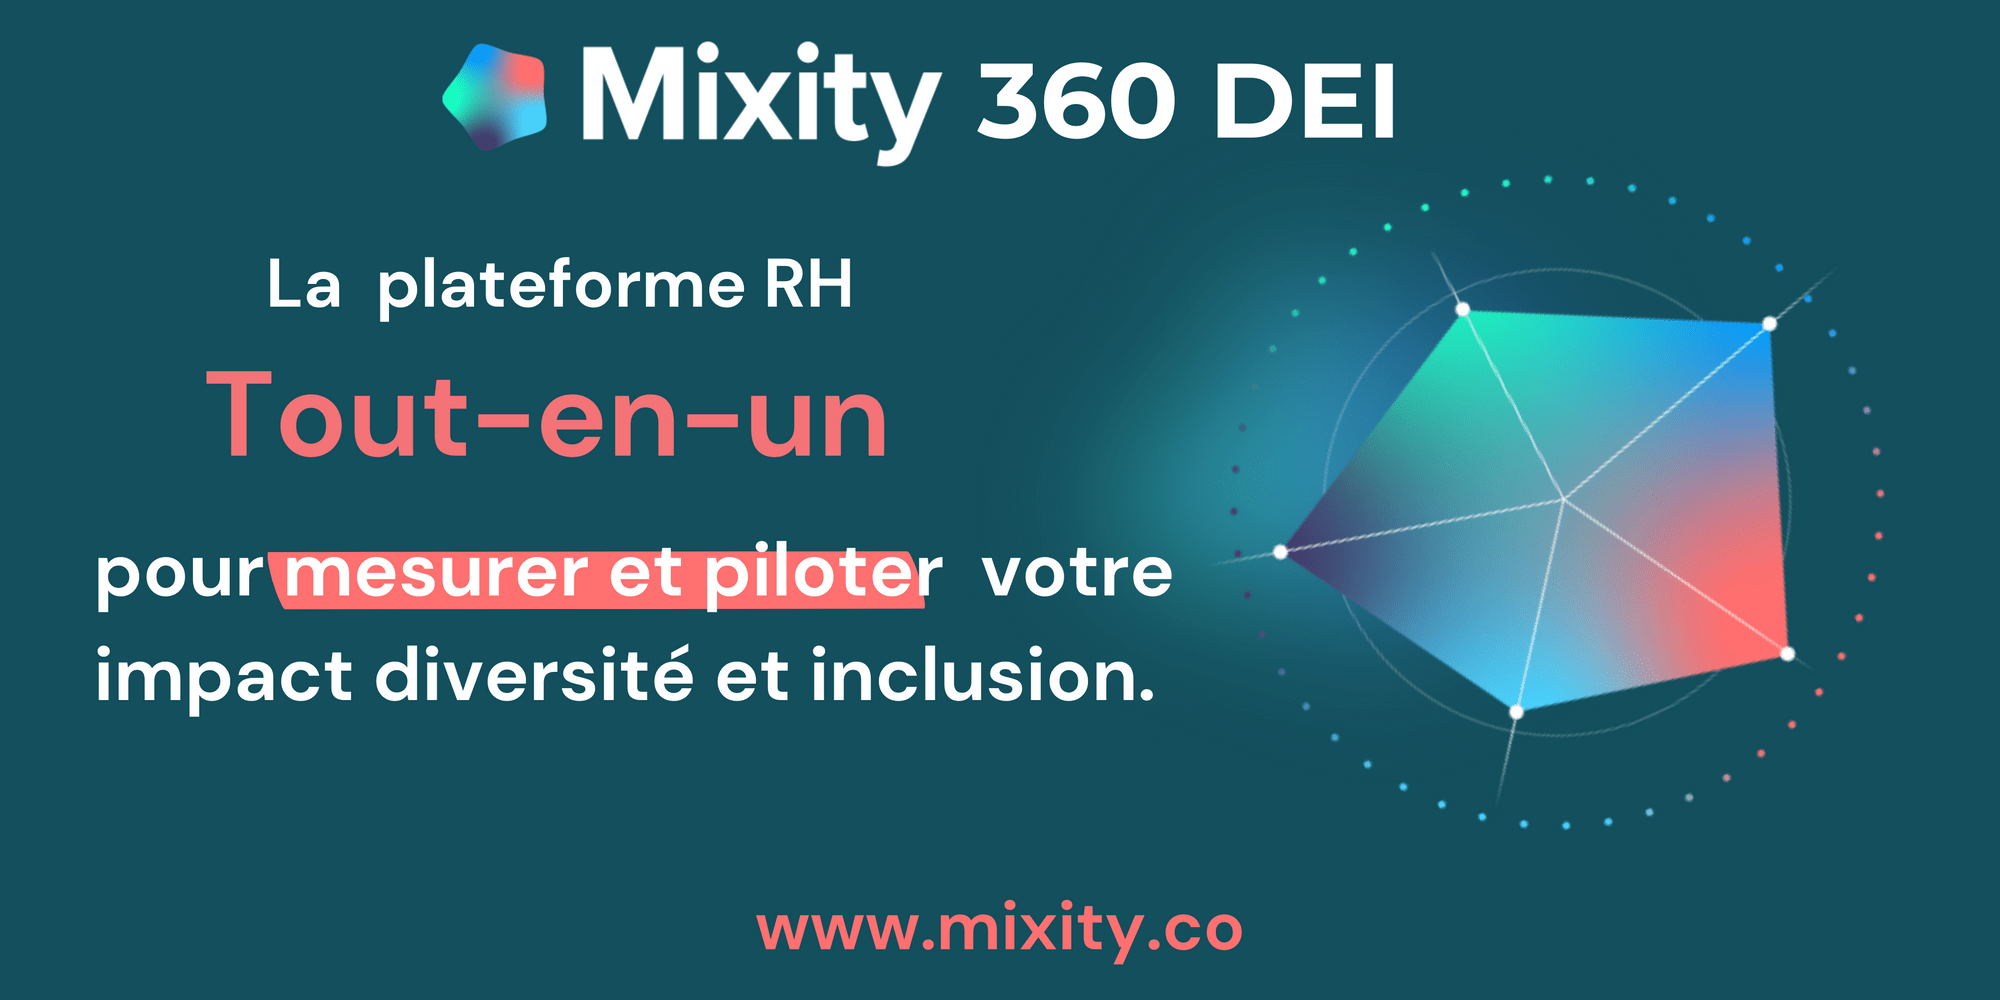 Mixity 360 DEI - la nouvelle solution tout-en-un pour mesurer et piloter la diversité, l'équité et l'inclusion dans la durée